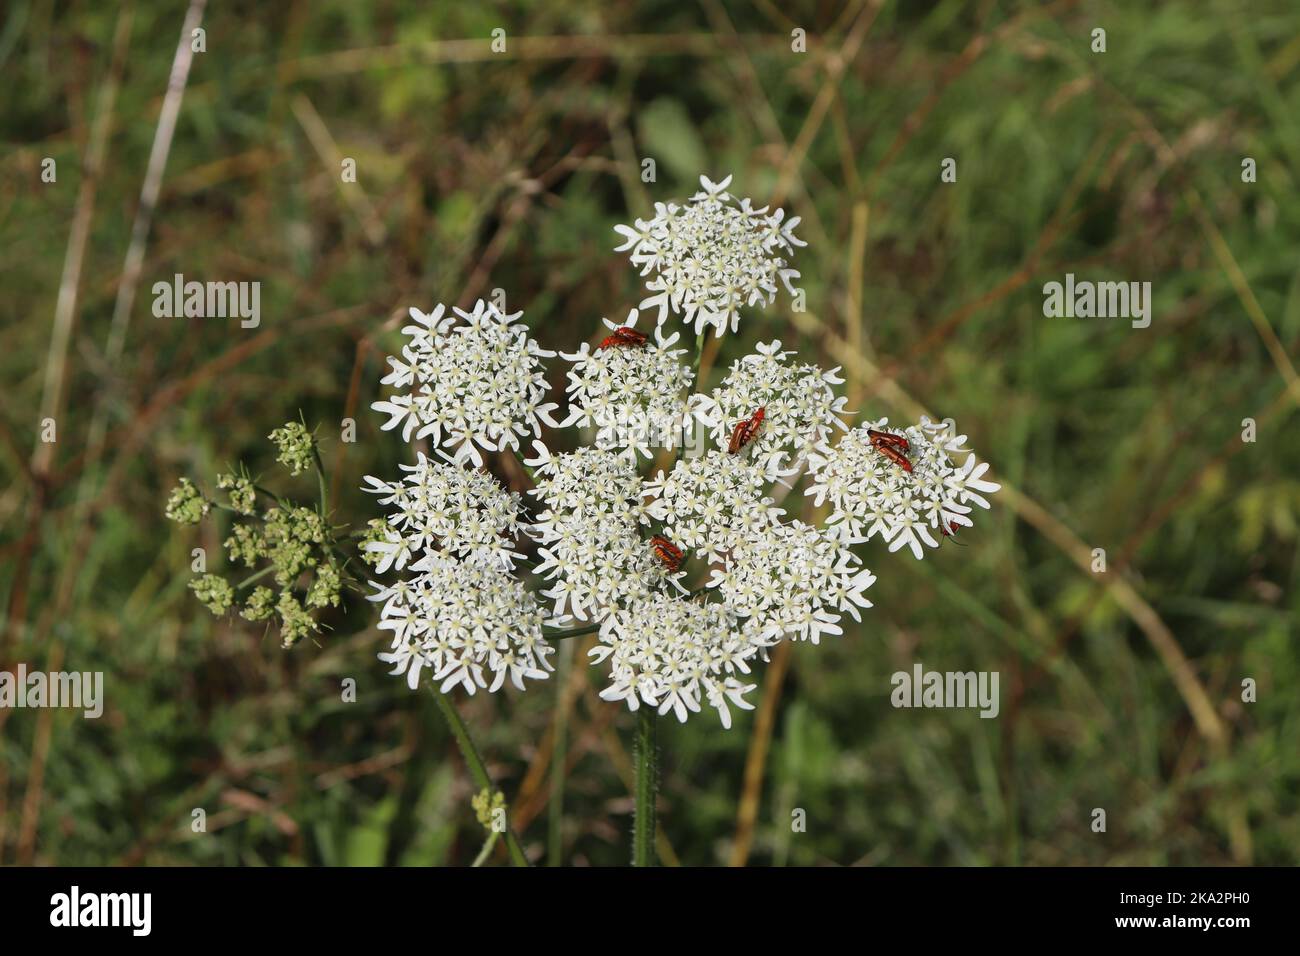 Schaafgarbe weiße Wildblume als Lebensraum von Insekten - Käfer auf Weißer Blüte einer wachsenden Blume Foto Stock